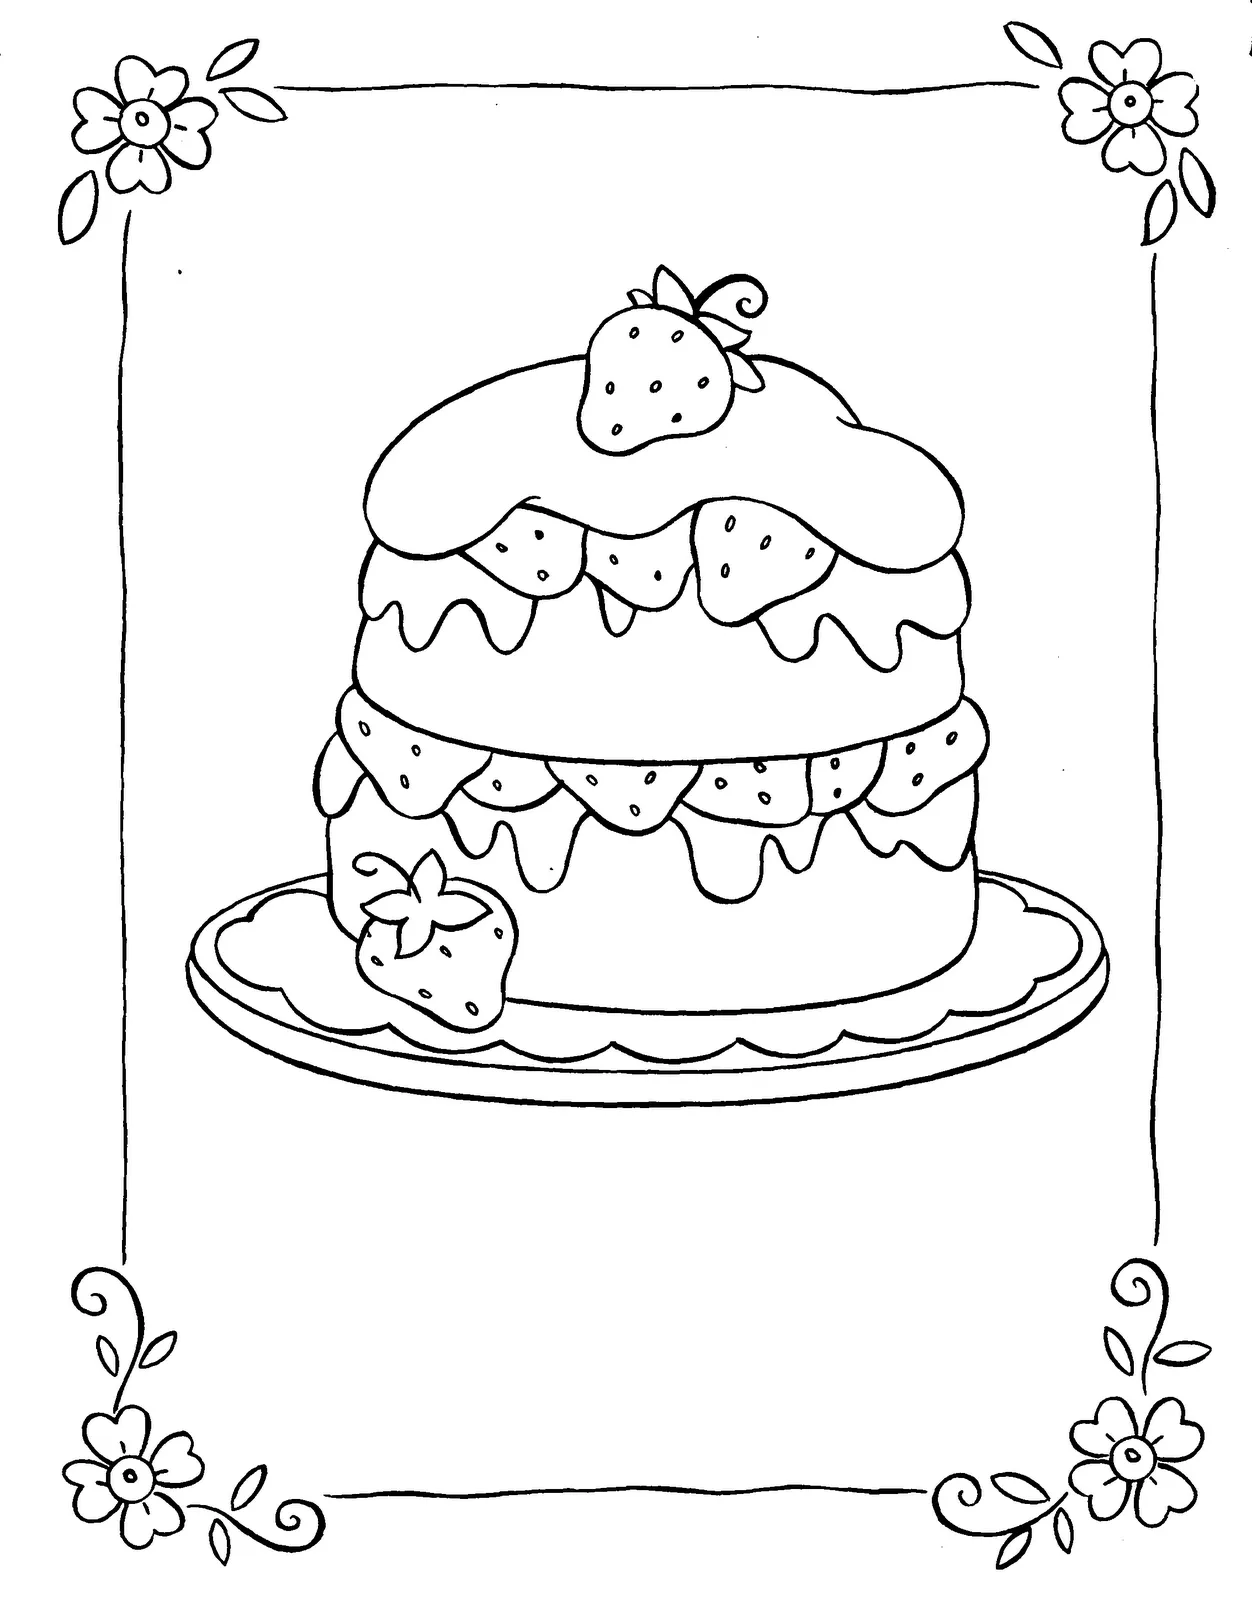 Dibujos de pasteles y tortas para pintar ~ en Picturalia